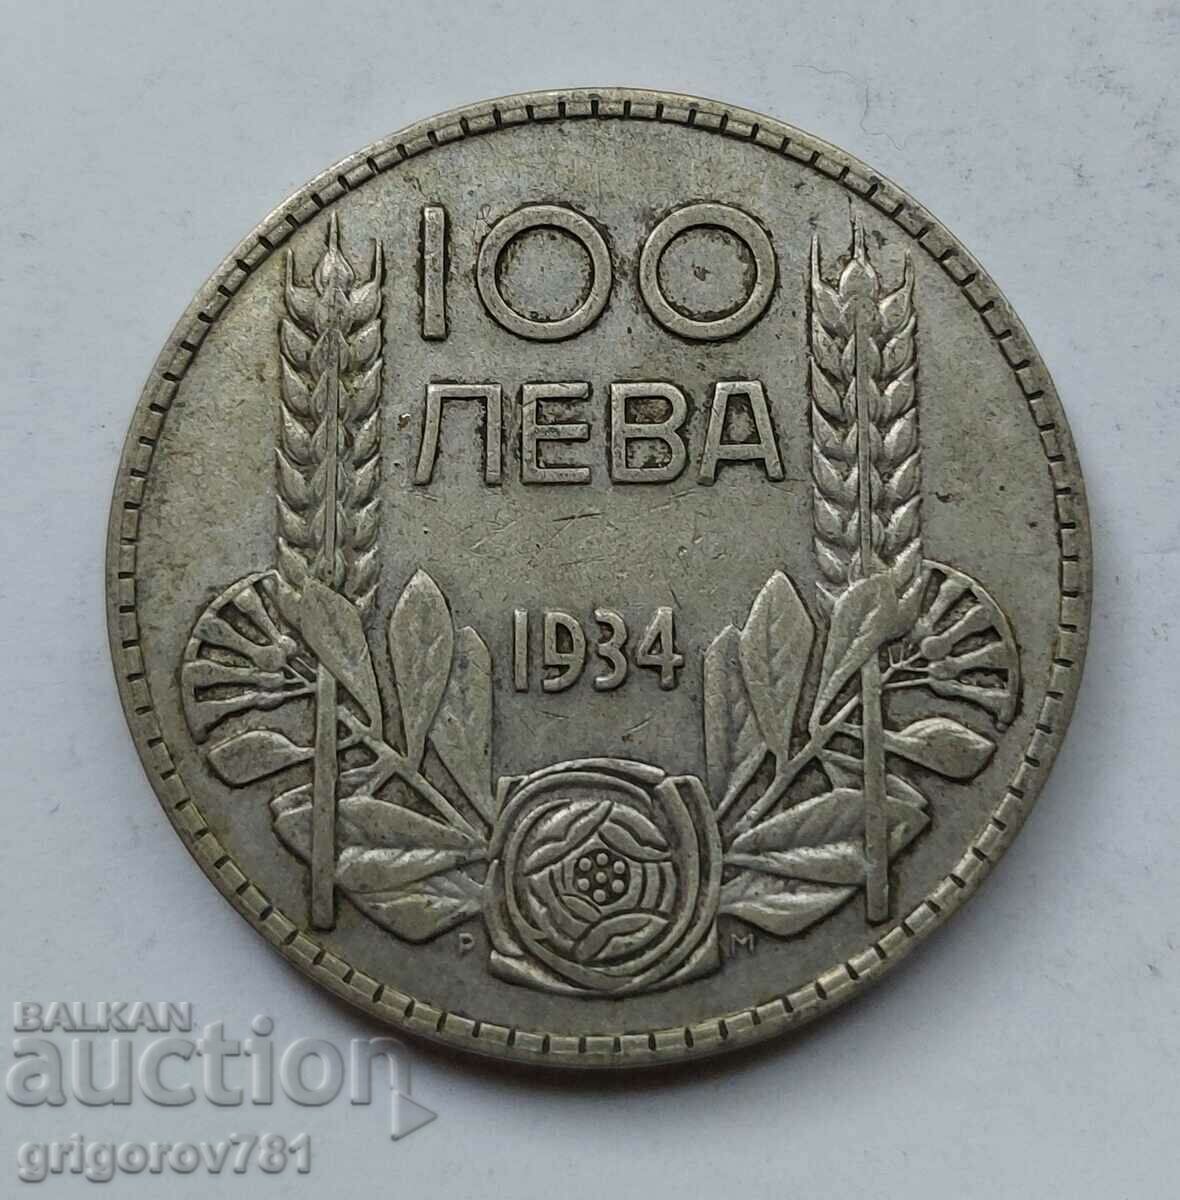 100 leva silver Bulgaria 1934 - silver coin #68